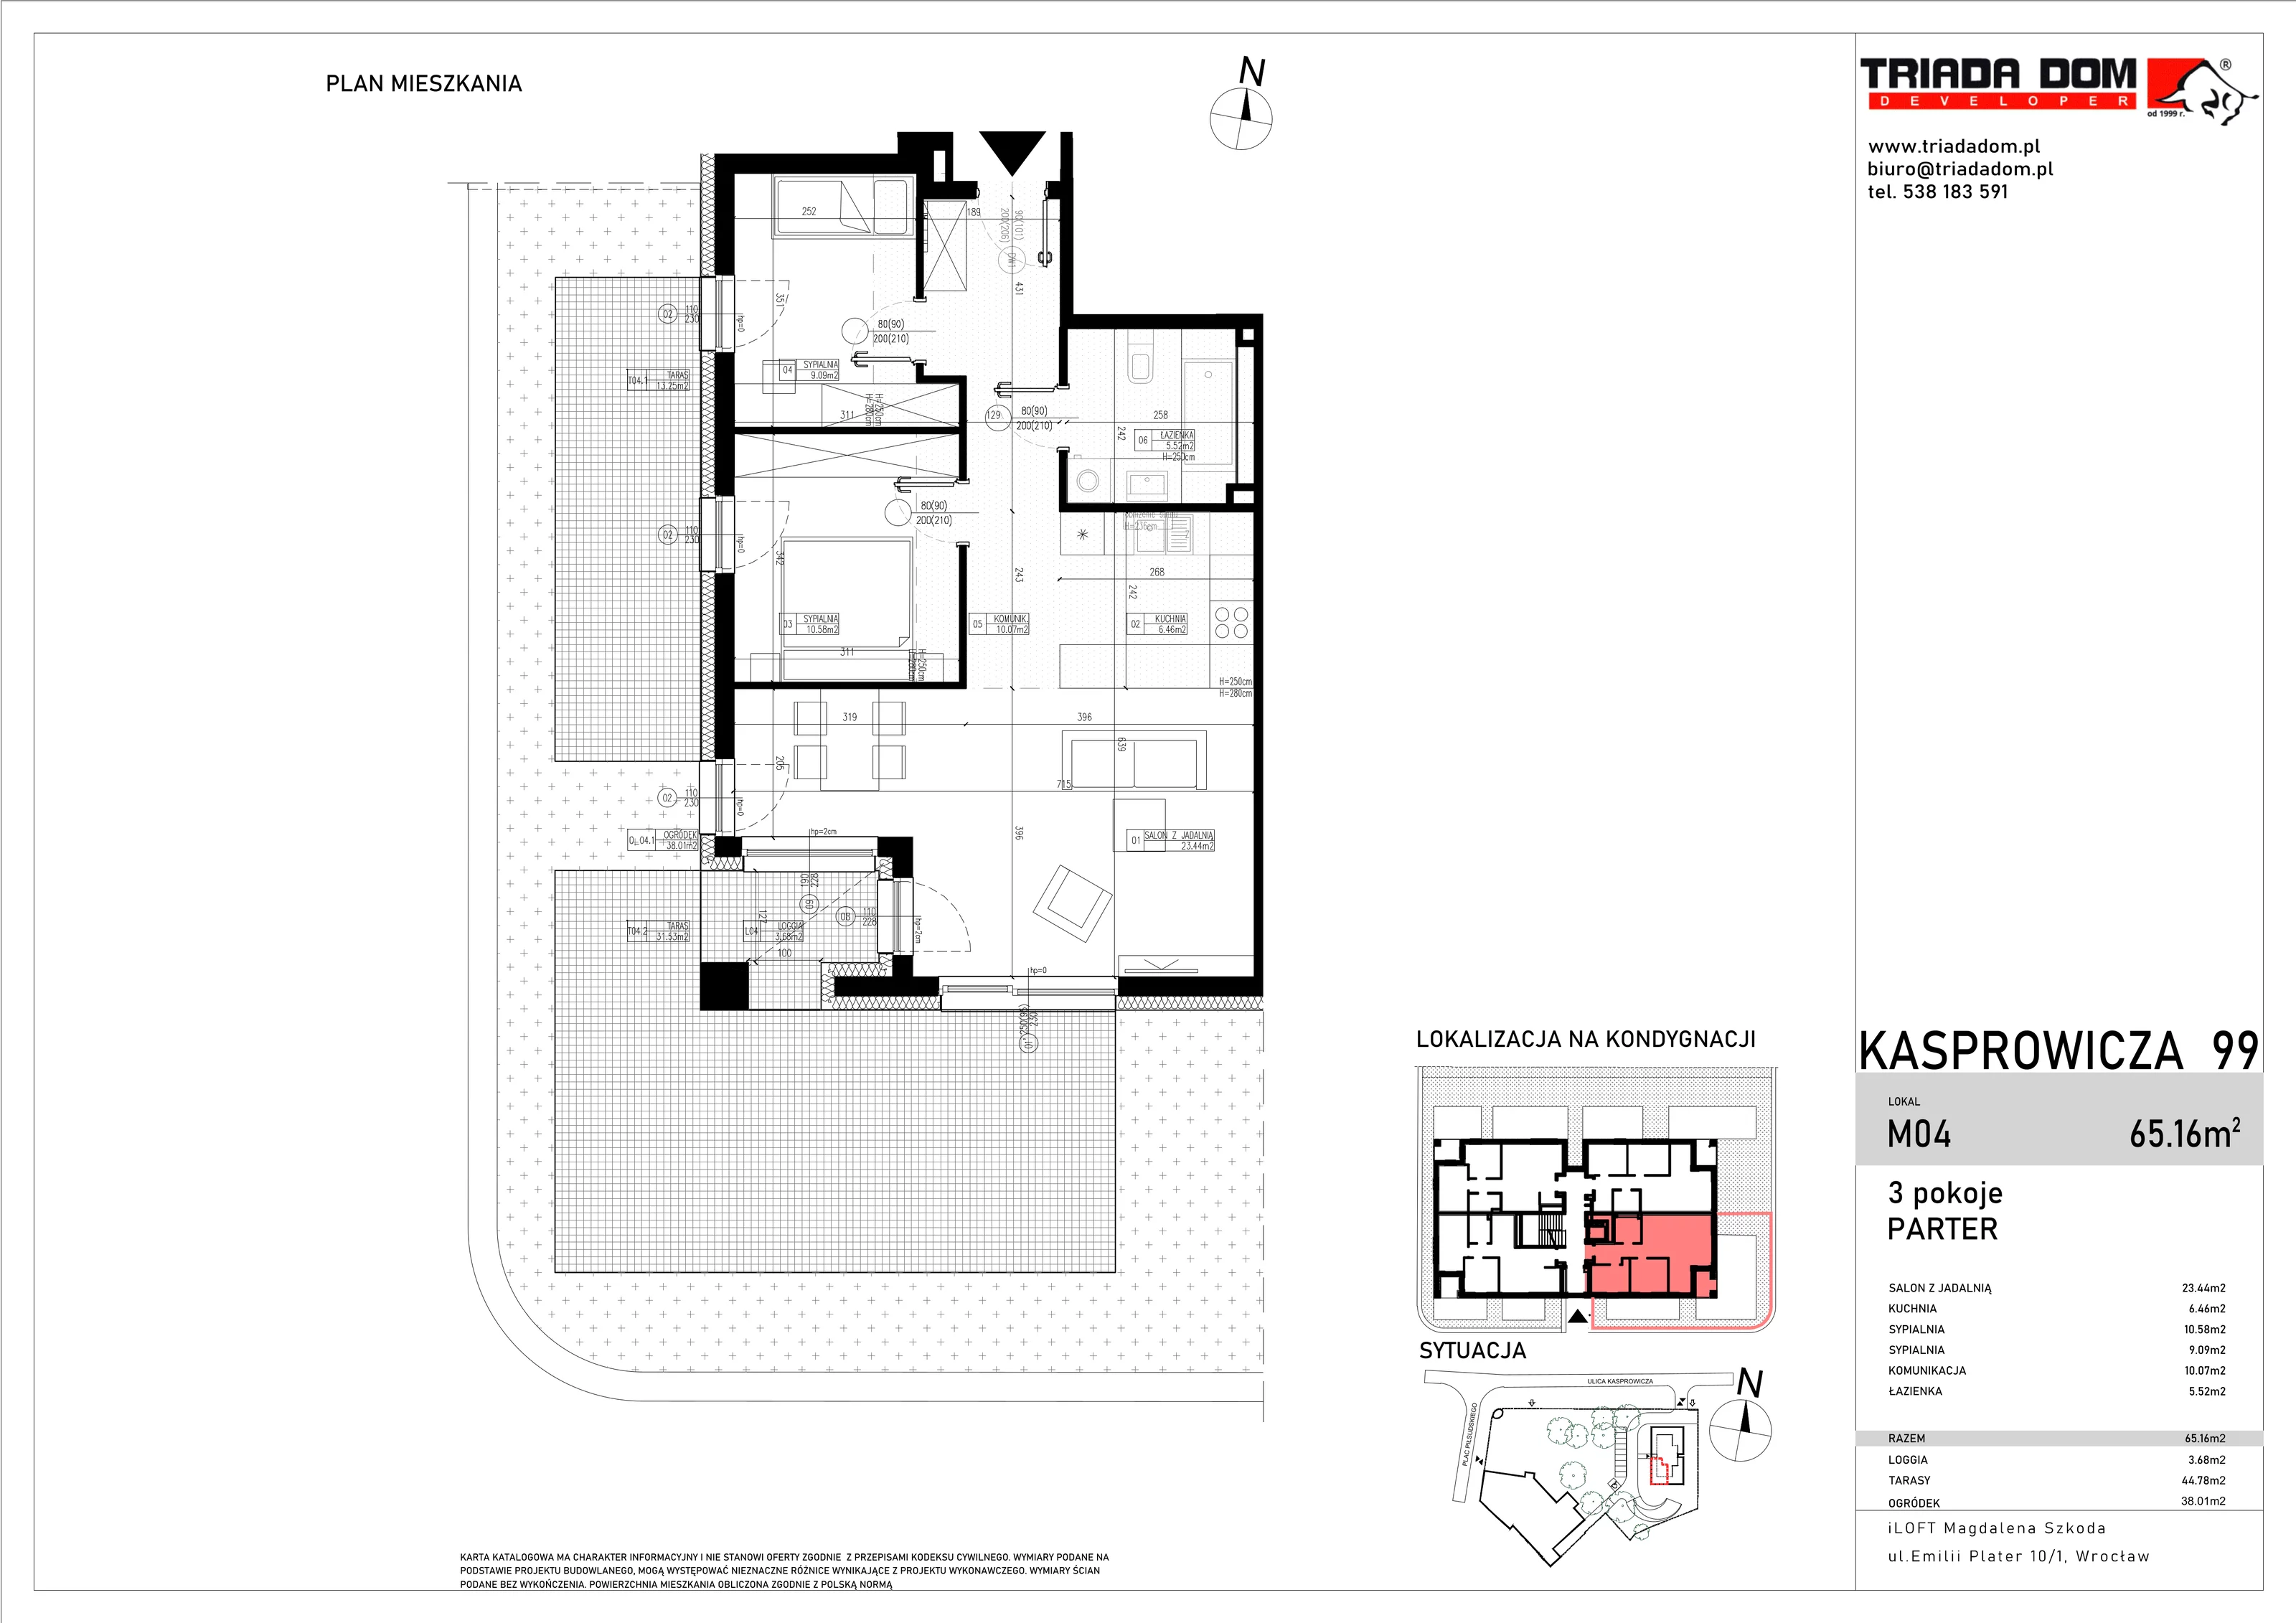 Apartament 65,16 m², parter, oferta nr M04, Apartamenty Kasprowicza Premium, Wrocław, Psie Pole-Zawidawie, Karłowice, al. Jana Kasprowicza 99